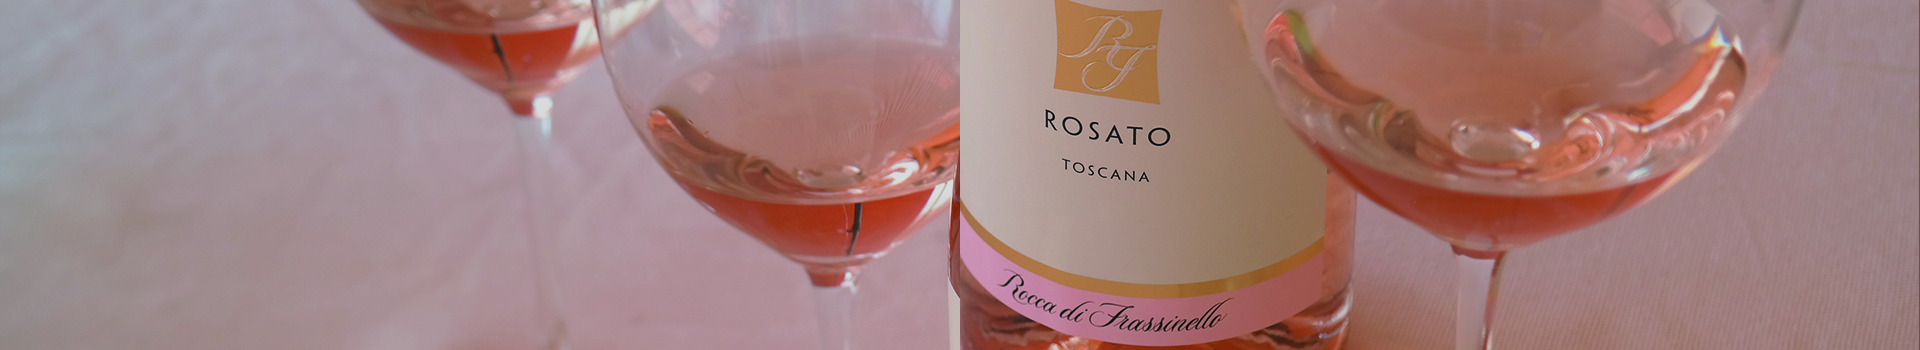 ROCCA DI FRASSINELLO PRESENTS THE NEW ROSE’ WINE2022 HARVEST